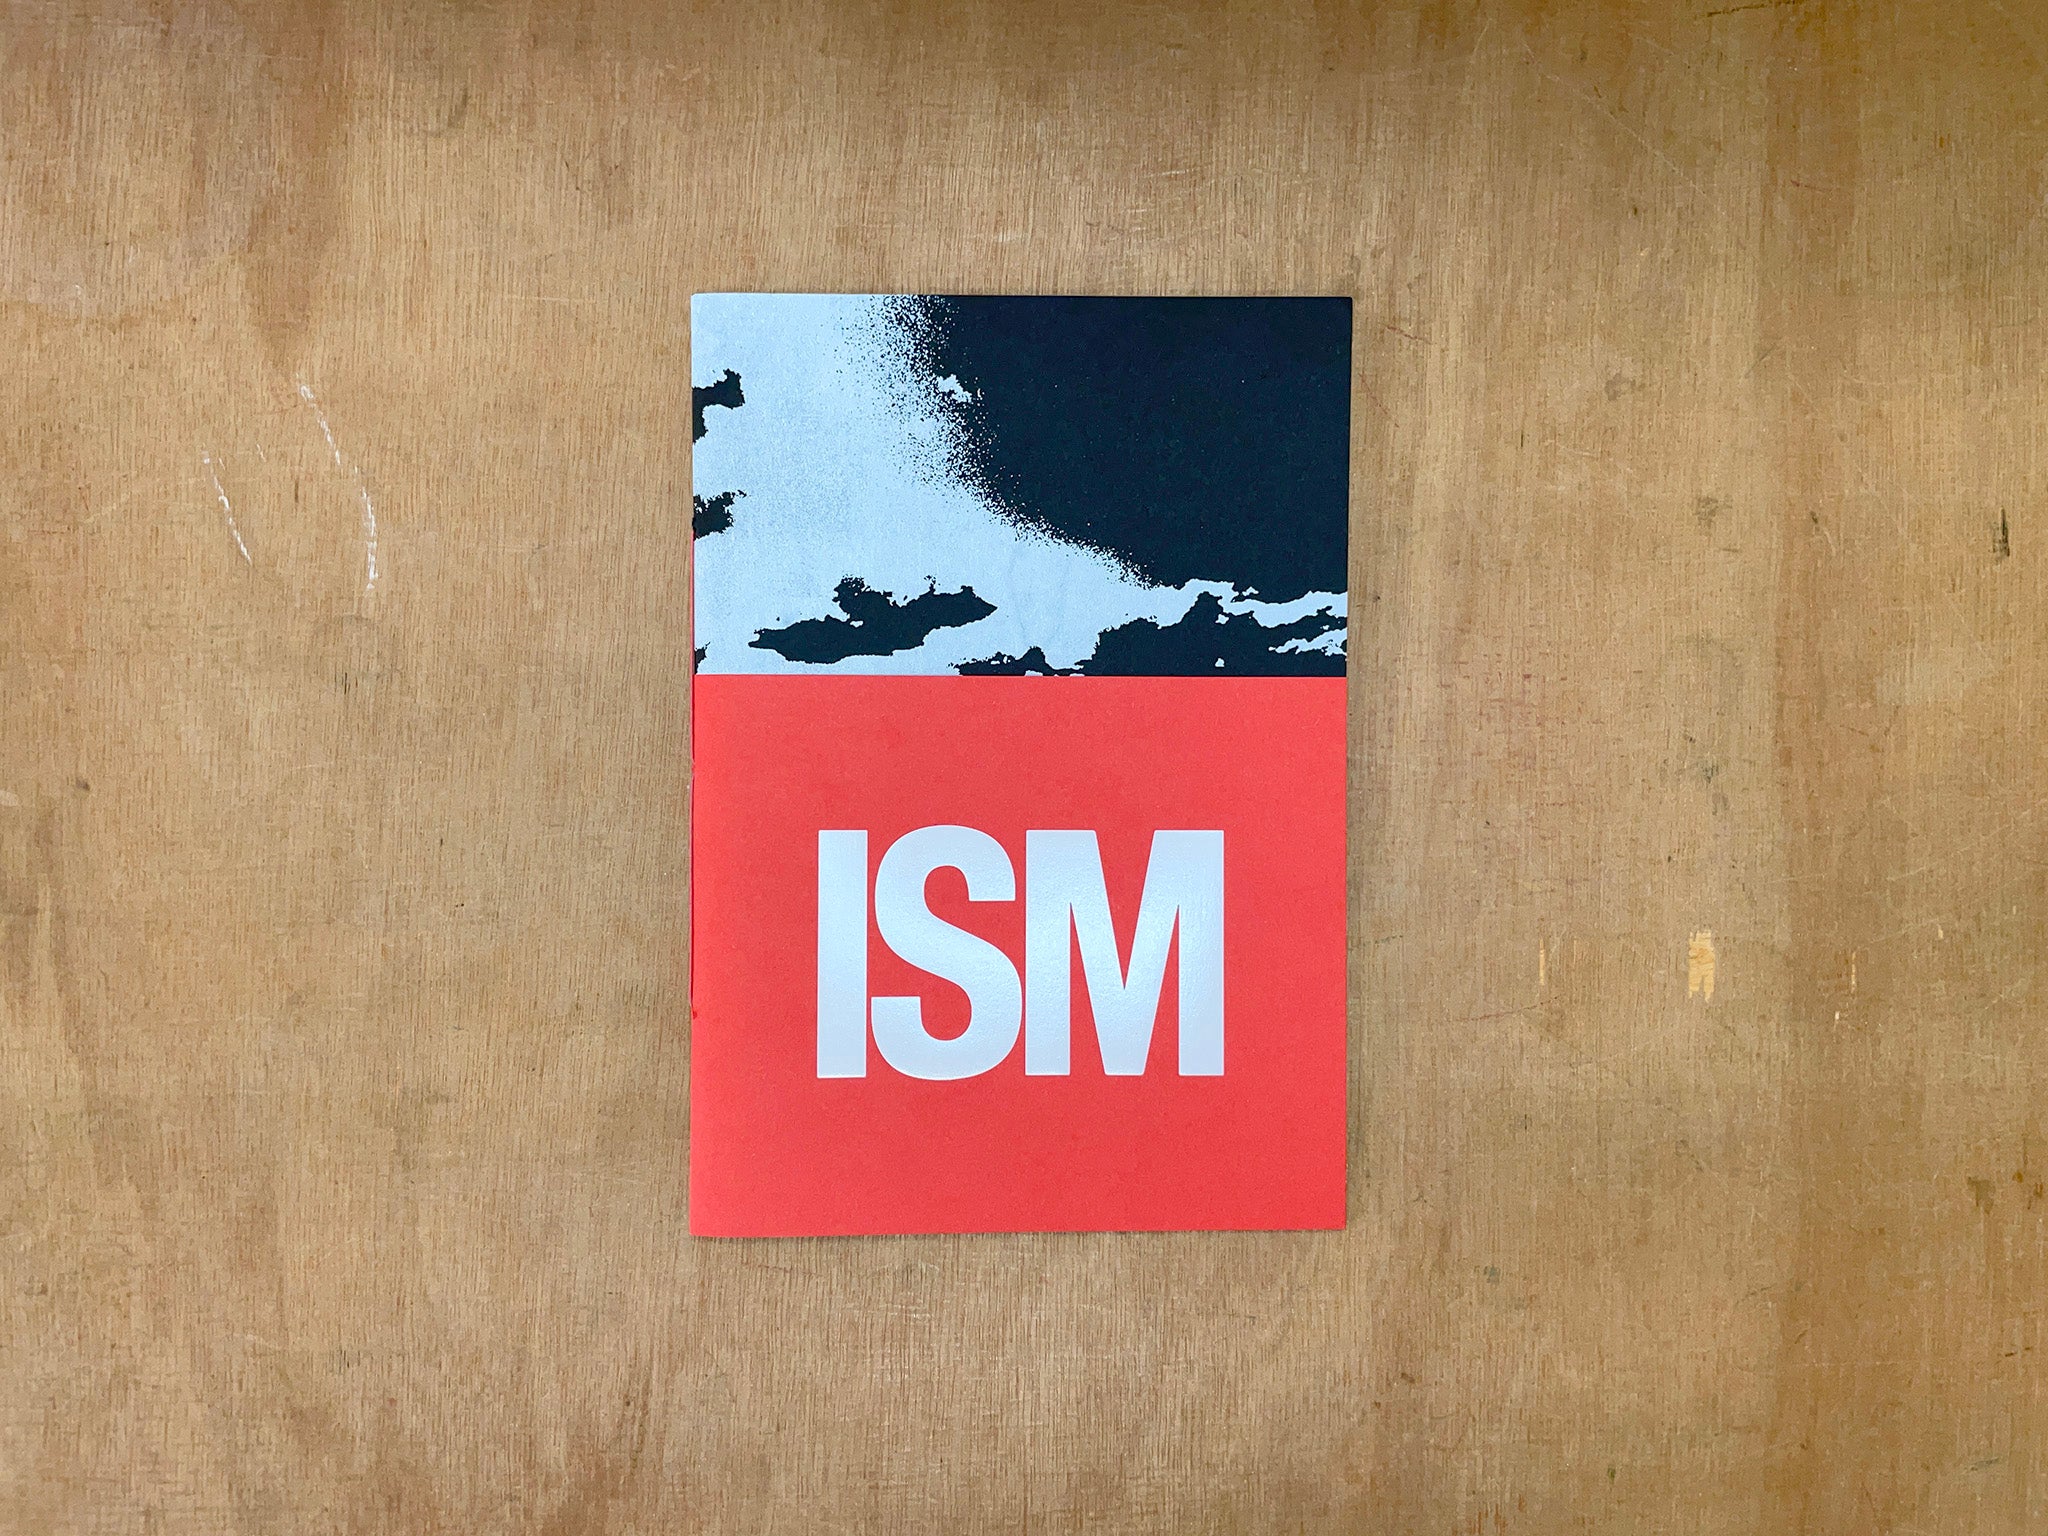 ISM by Luke Pickering